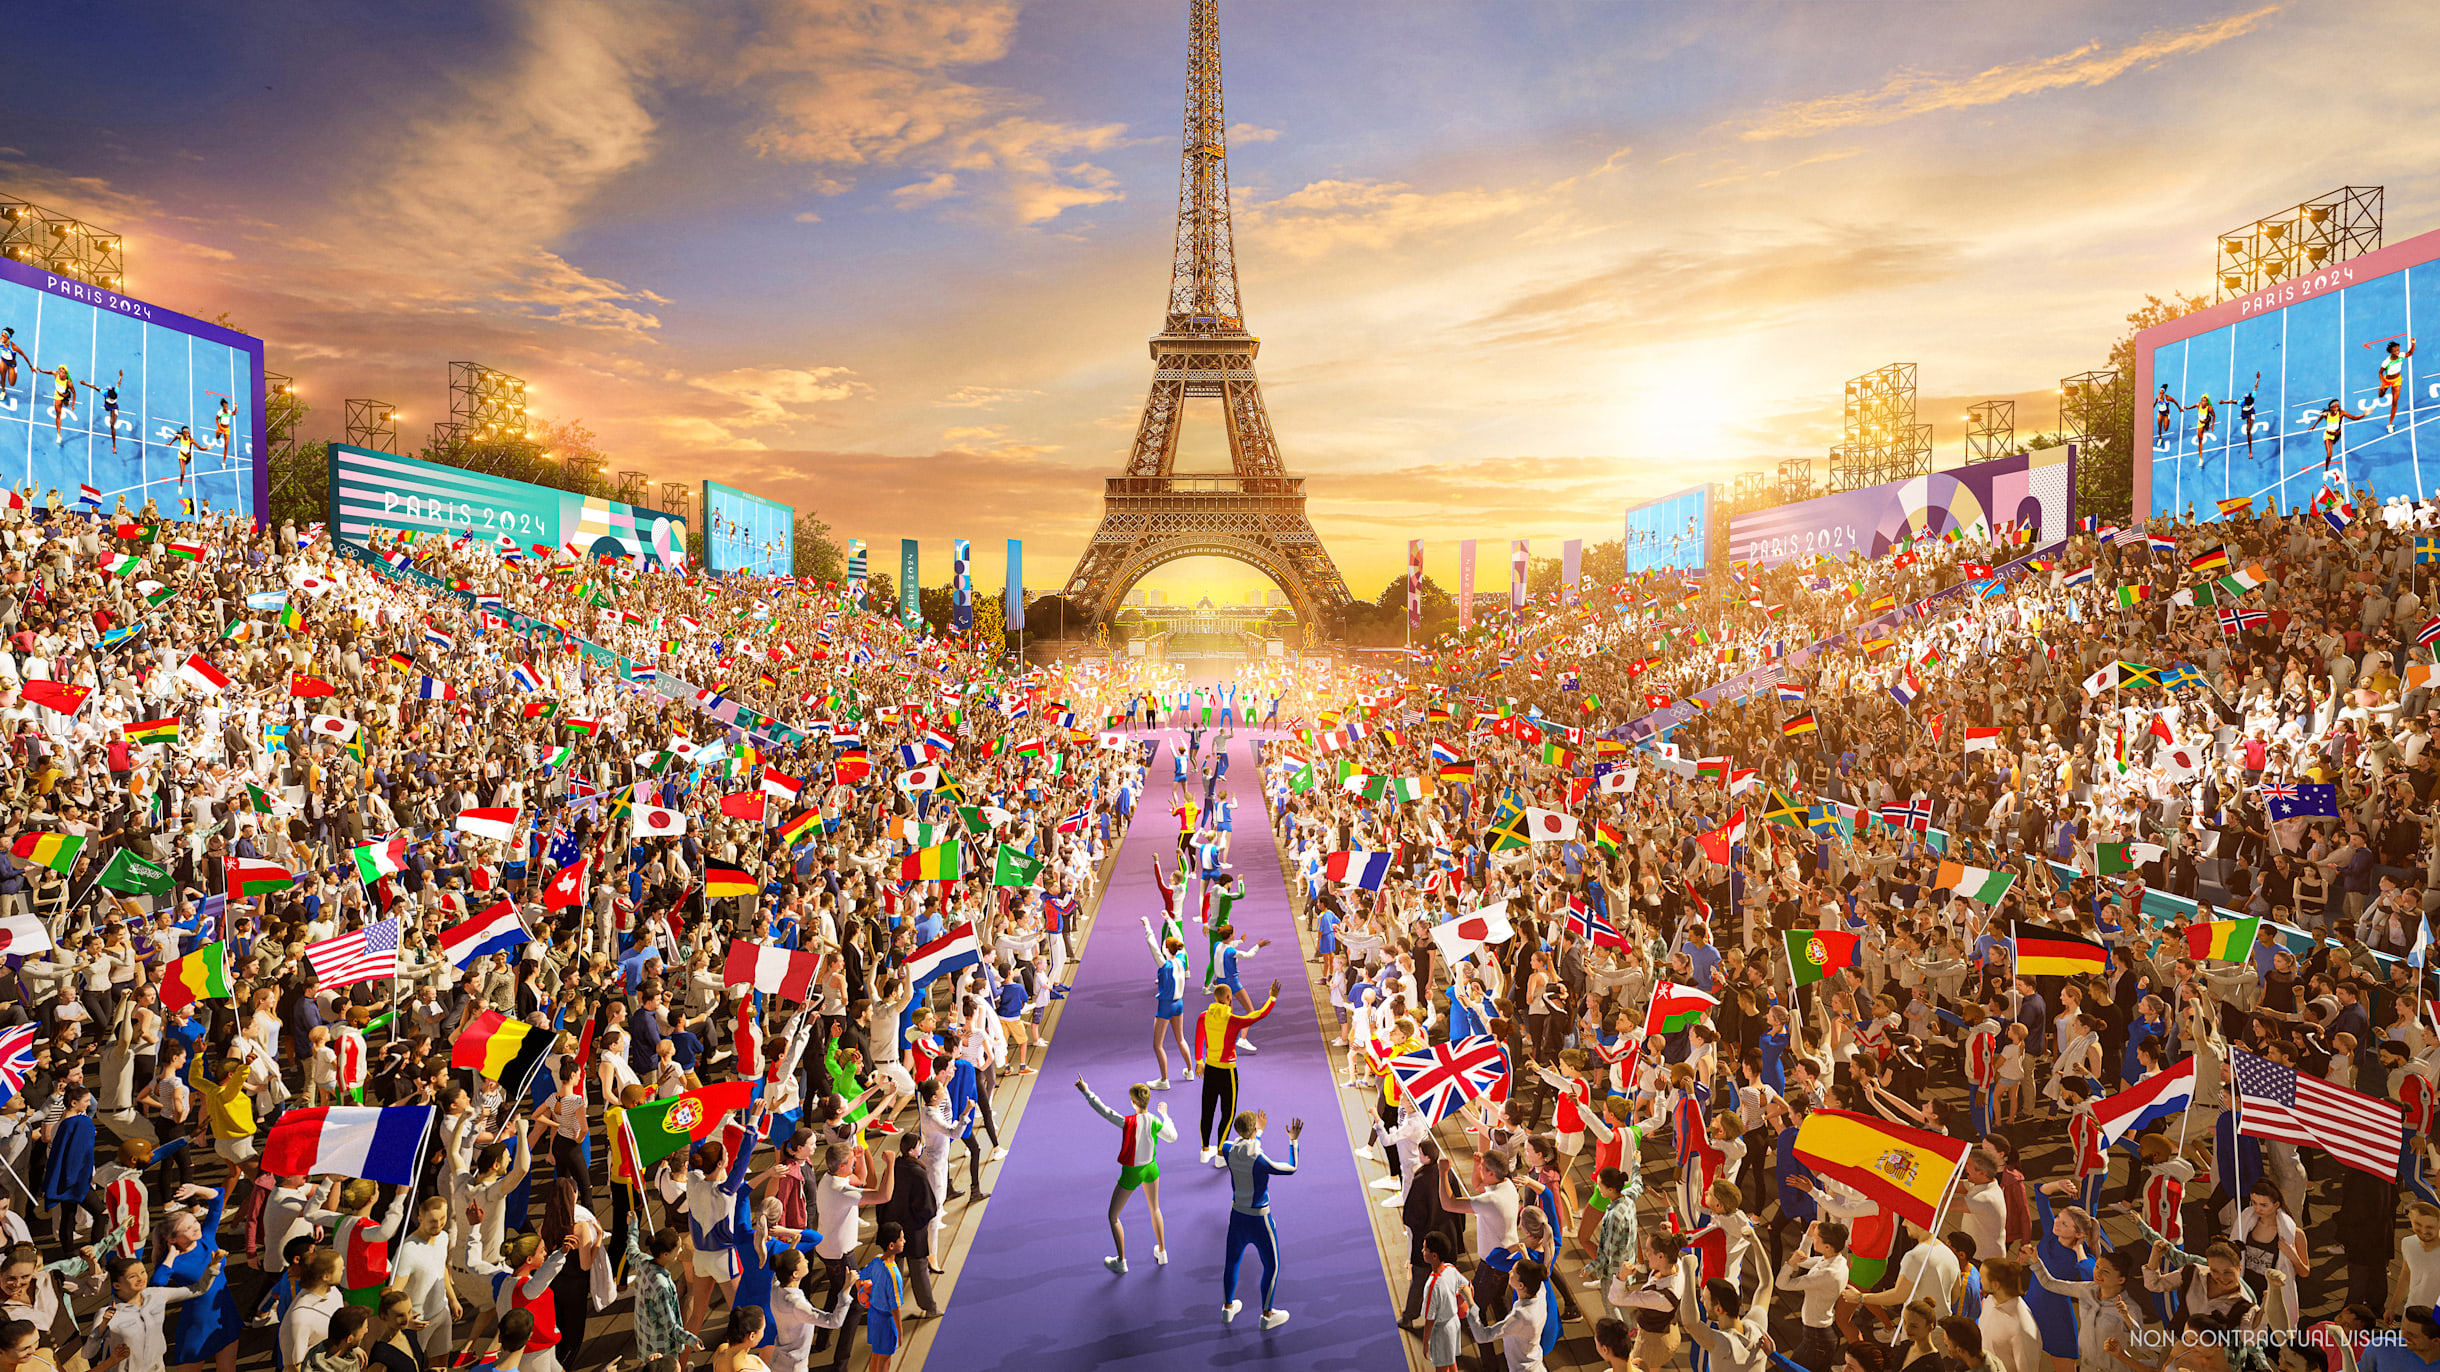 Jeux olympiques et paralympiques Paris 2024